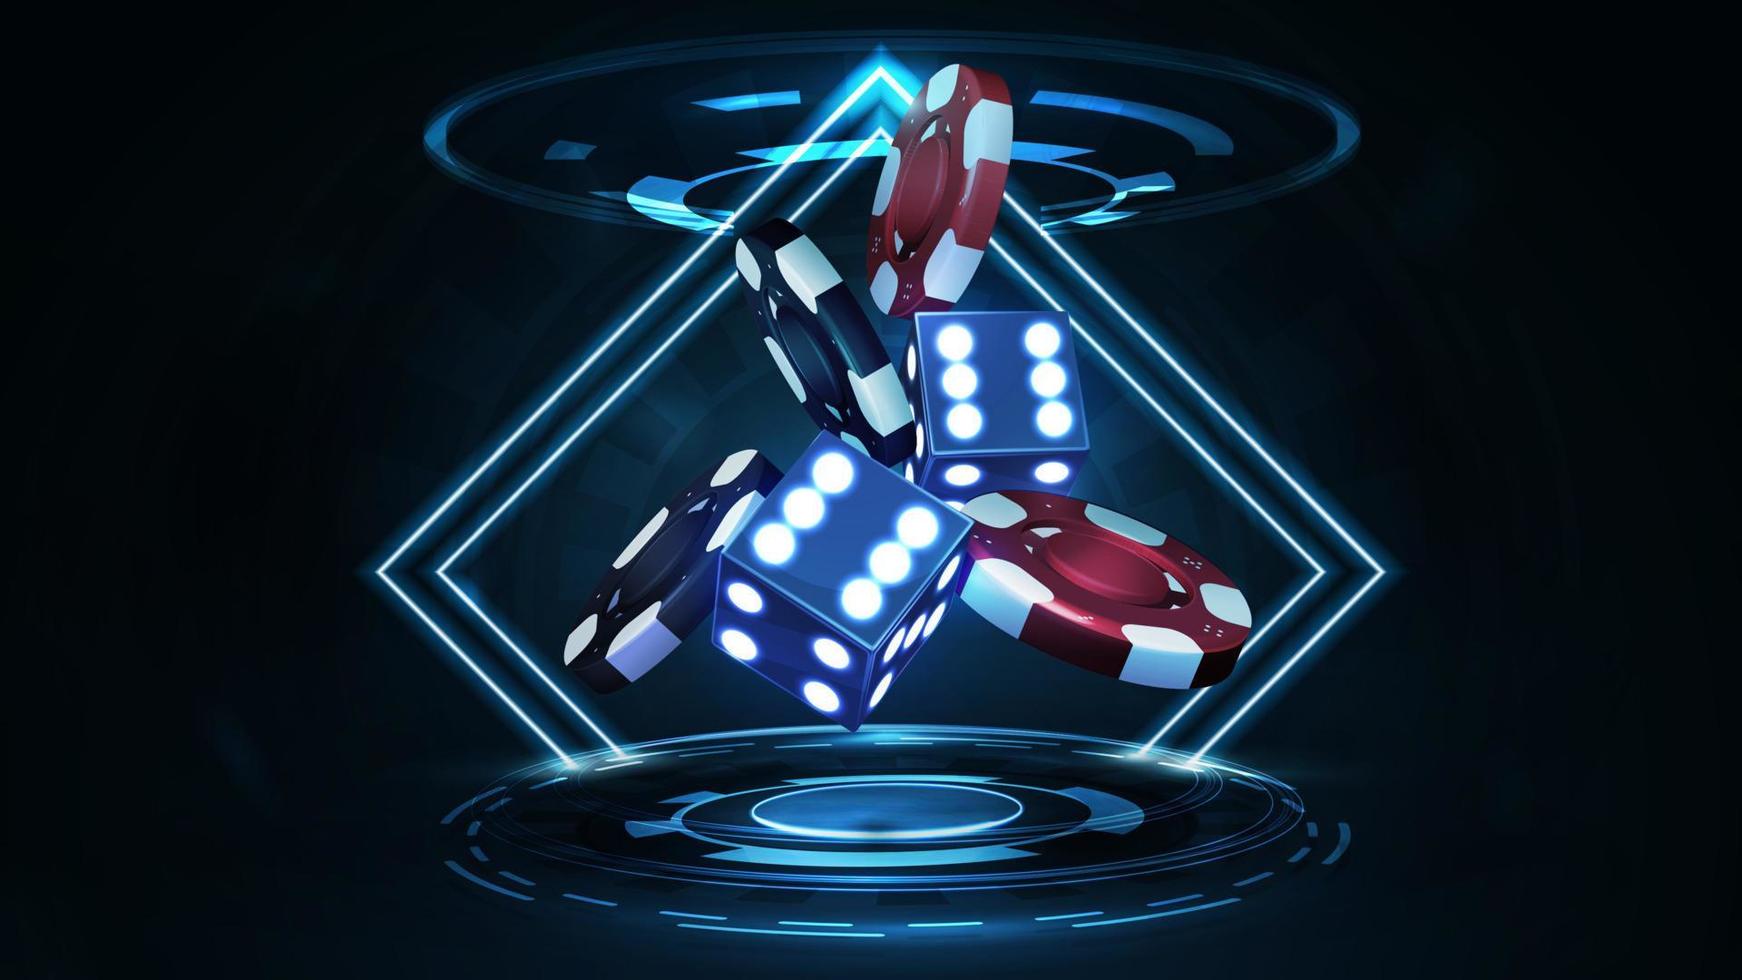 dados 3d de neón azul con una pila de fichas de casino realistas en rojo y negro en una escena oscura con marcos de rombos de neón y holograma de anillos digitales vector